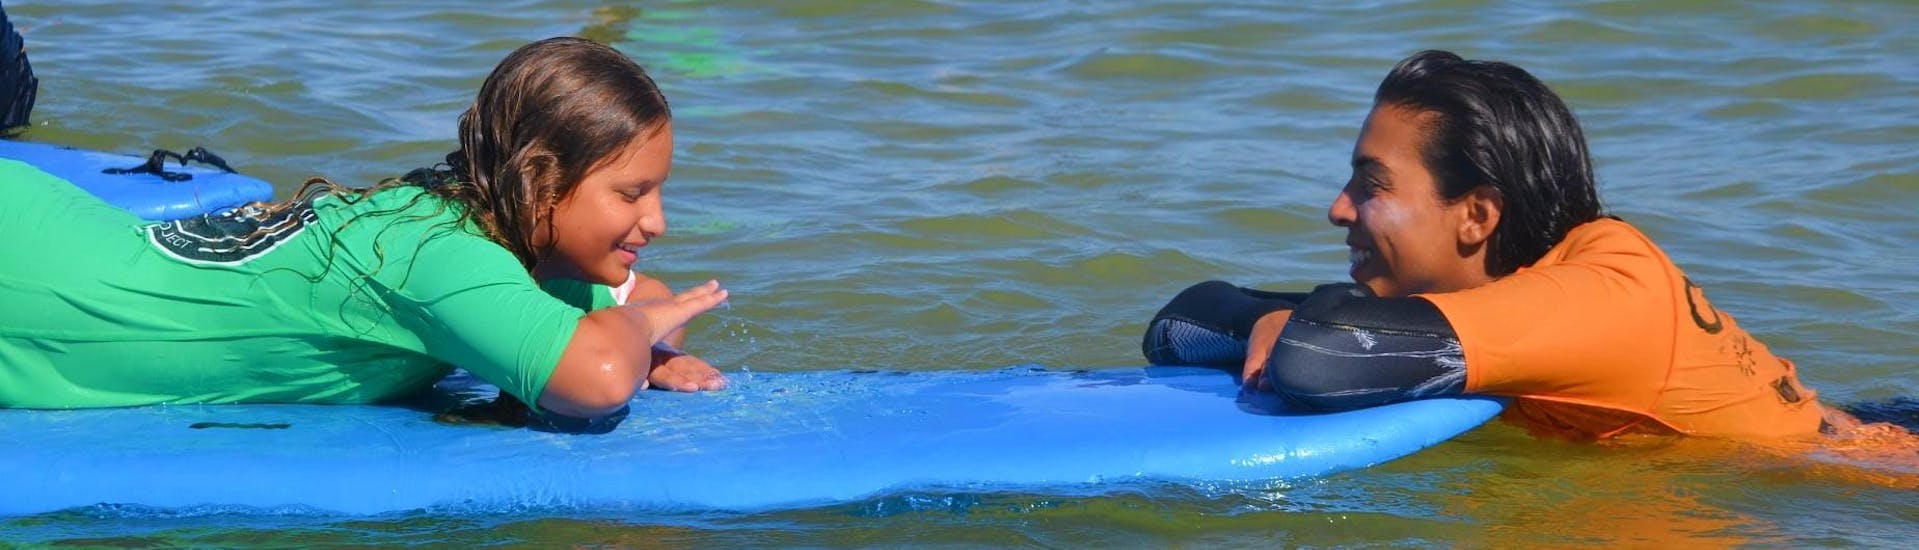 Eine Surflehrerin von Vilamoura Surf Project lernt einem Surfschüler die richtige Technik im Wasser während dem Surfkurs am Praia da Falésia für alle Levels.